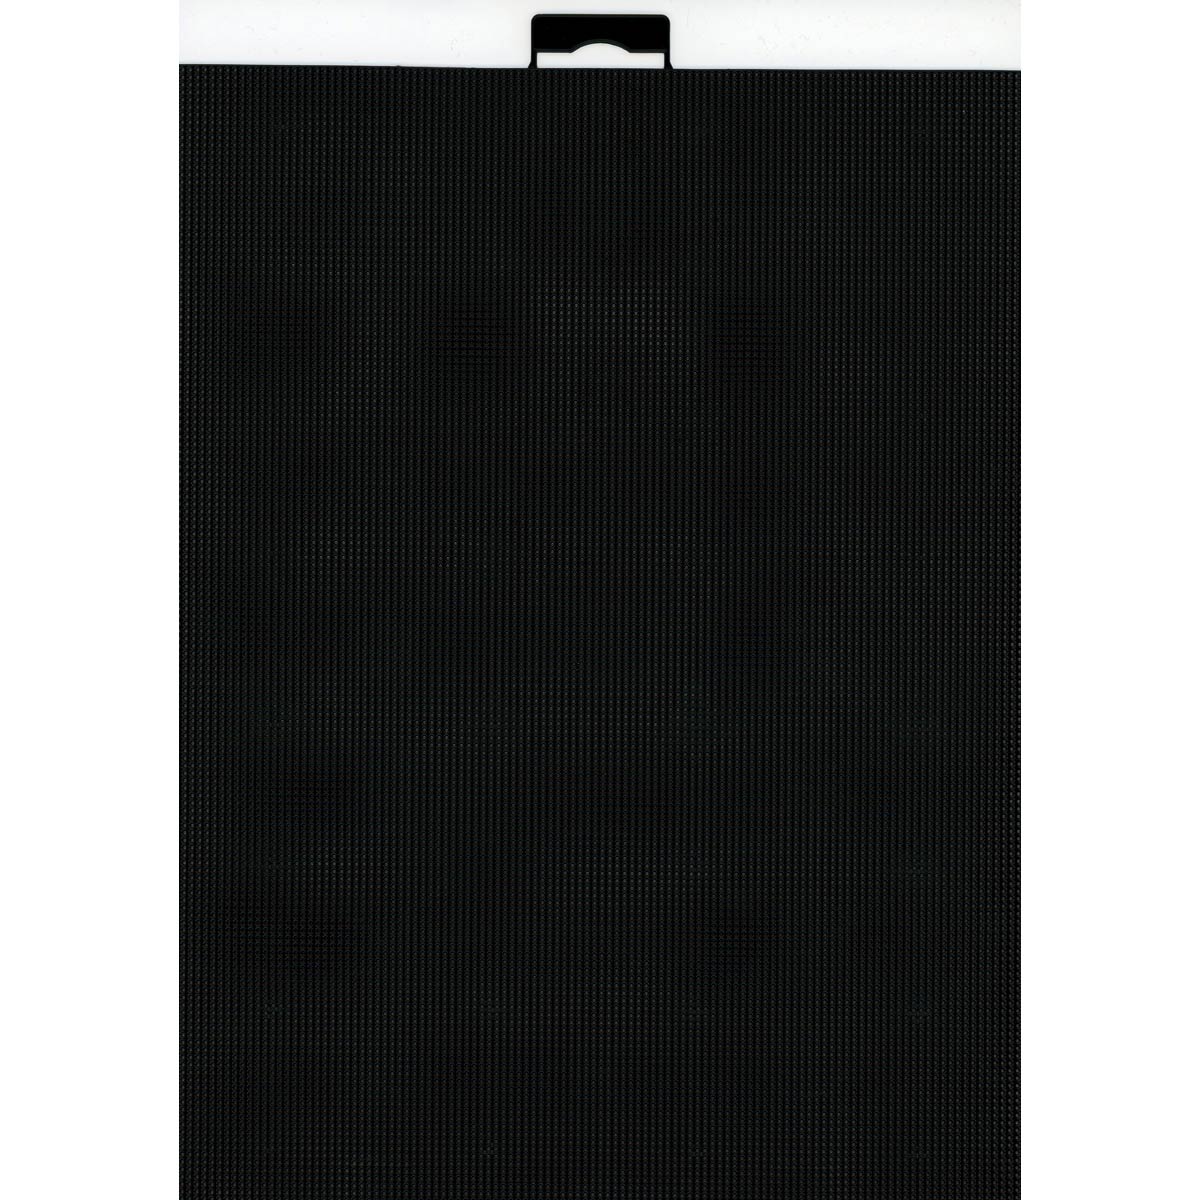 Канва М.П.Студия платиковая для вышивания шитья и рукоделия 14ct 21х28 см черная - фото 1